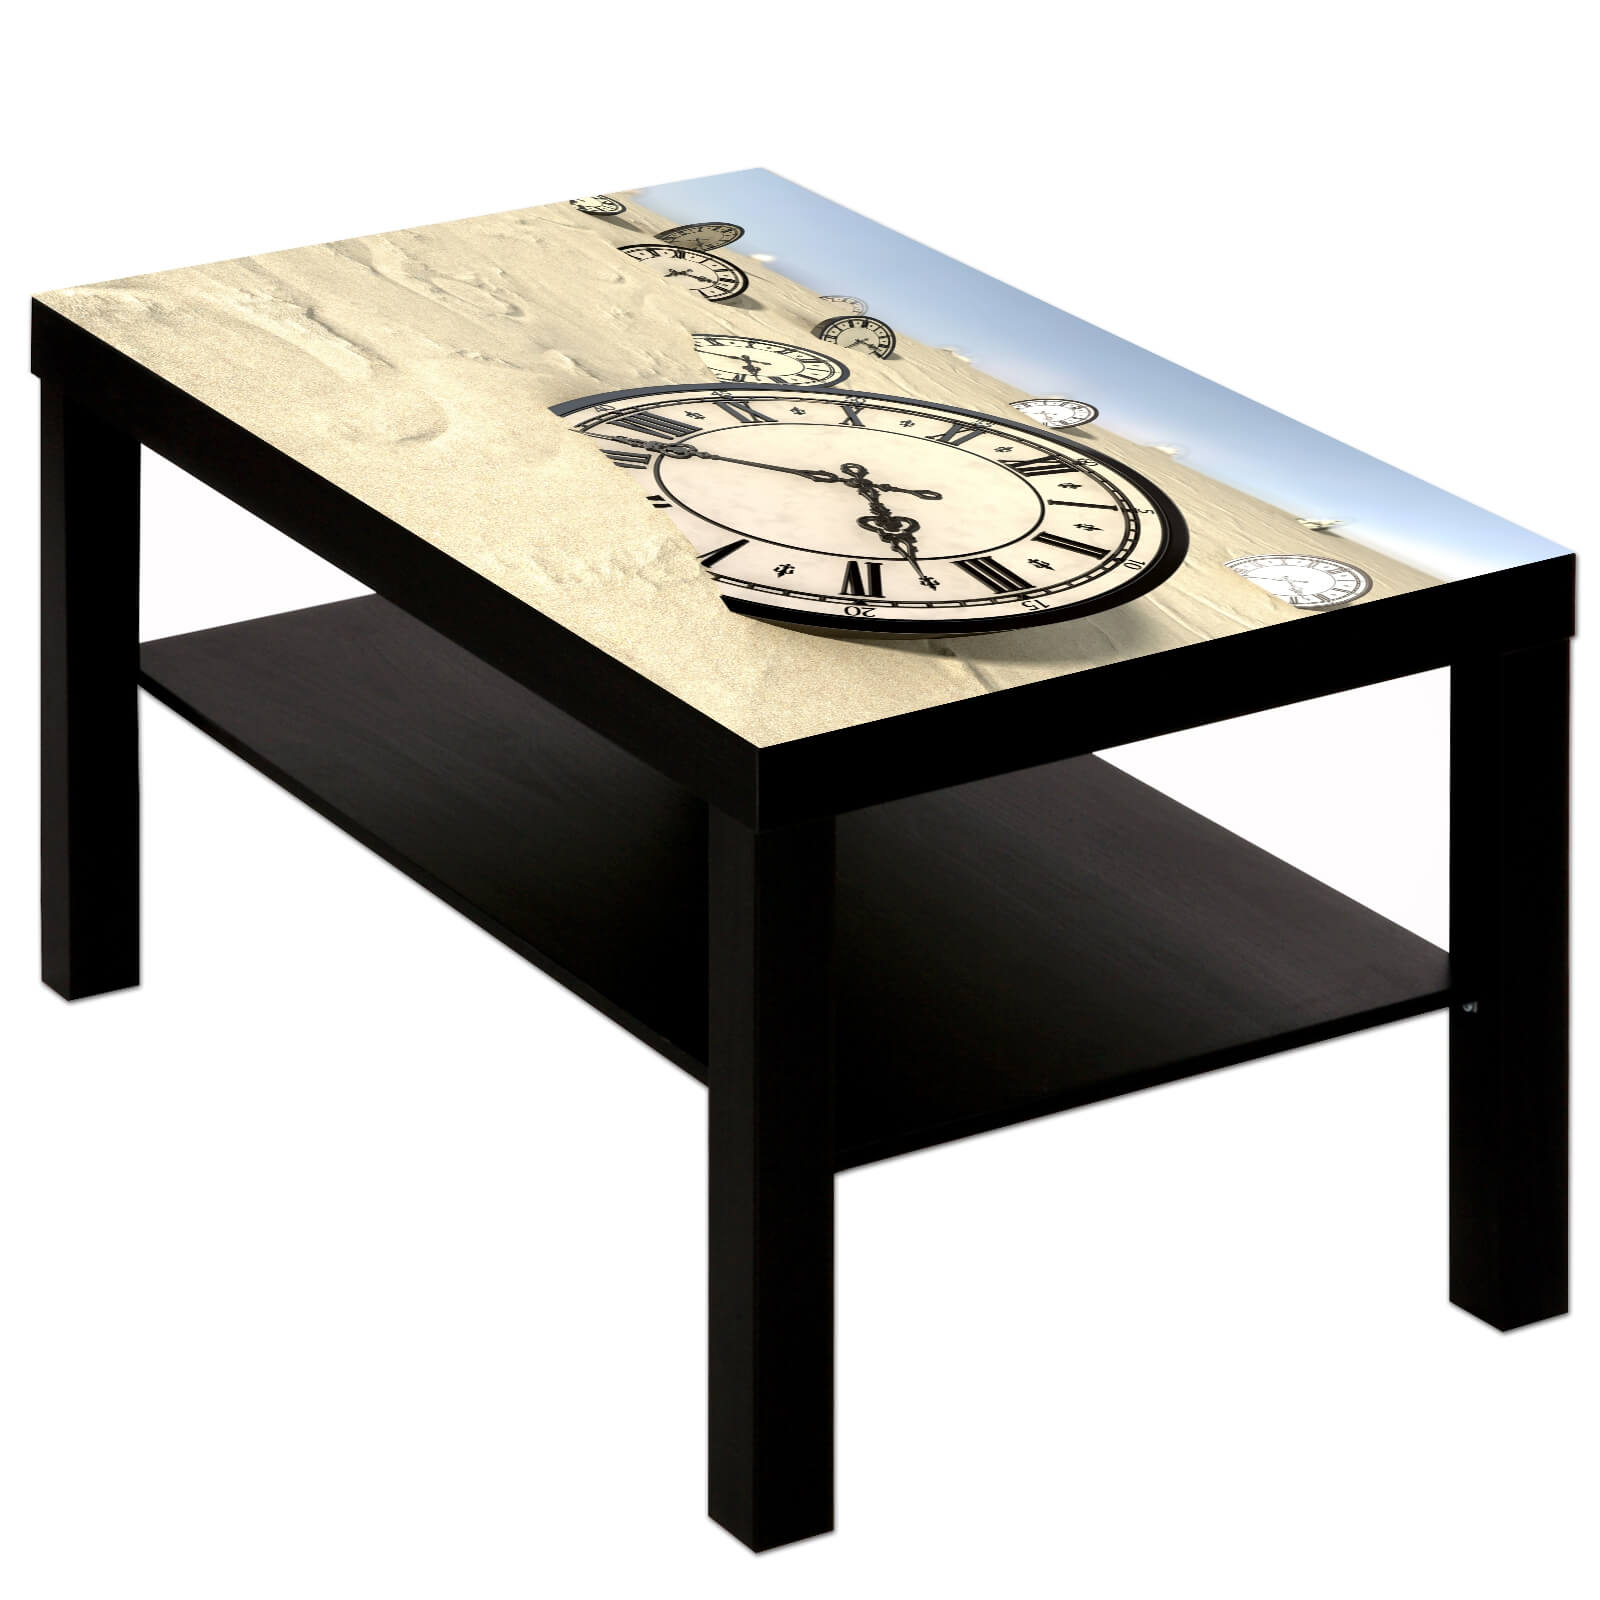 Couchtisch Tisch mit Motiv Bild Retro Antik Uhr im Sand